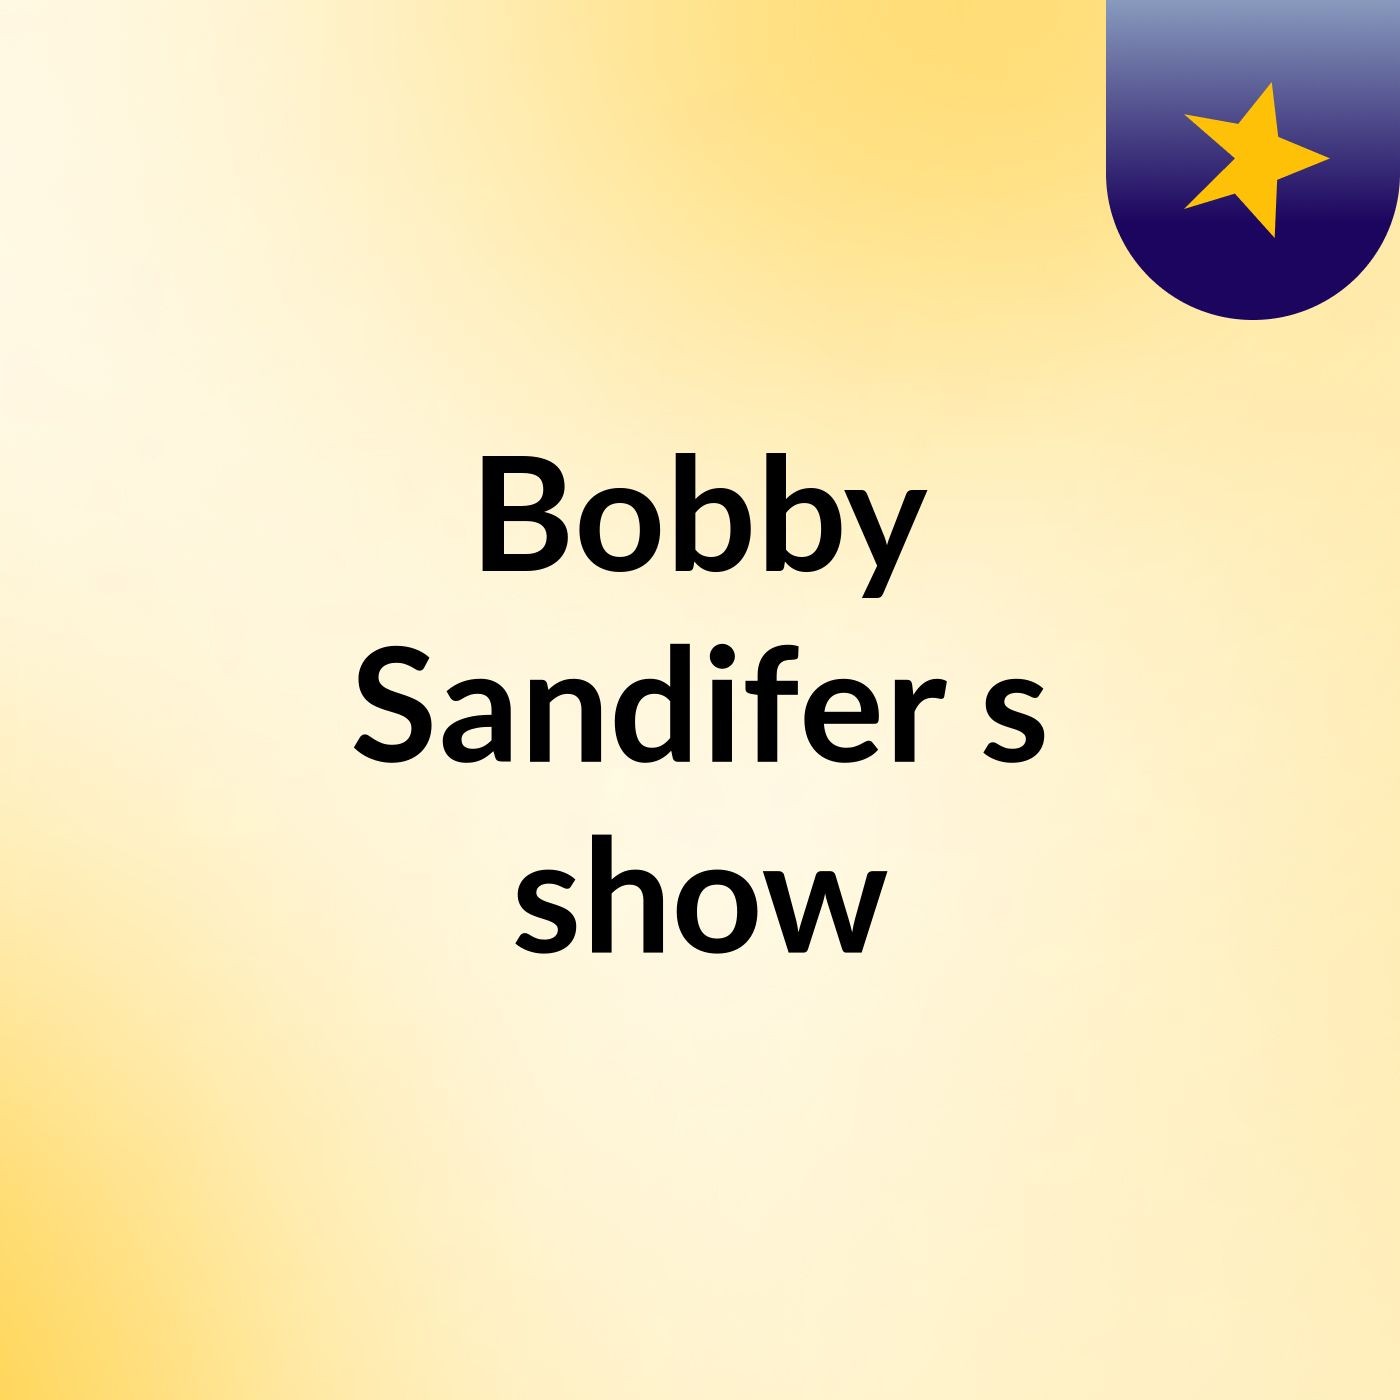 Bobby Sandifer's show